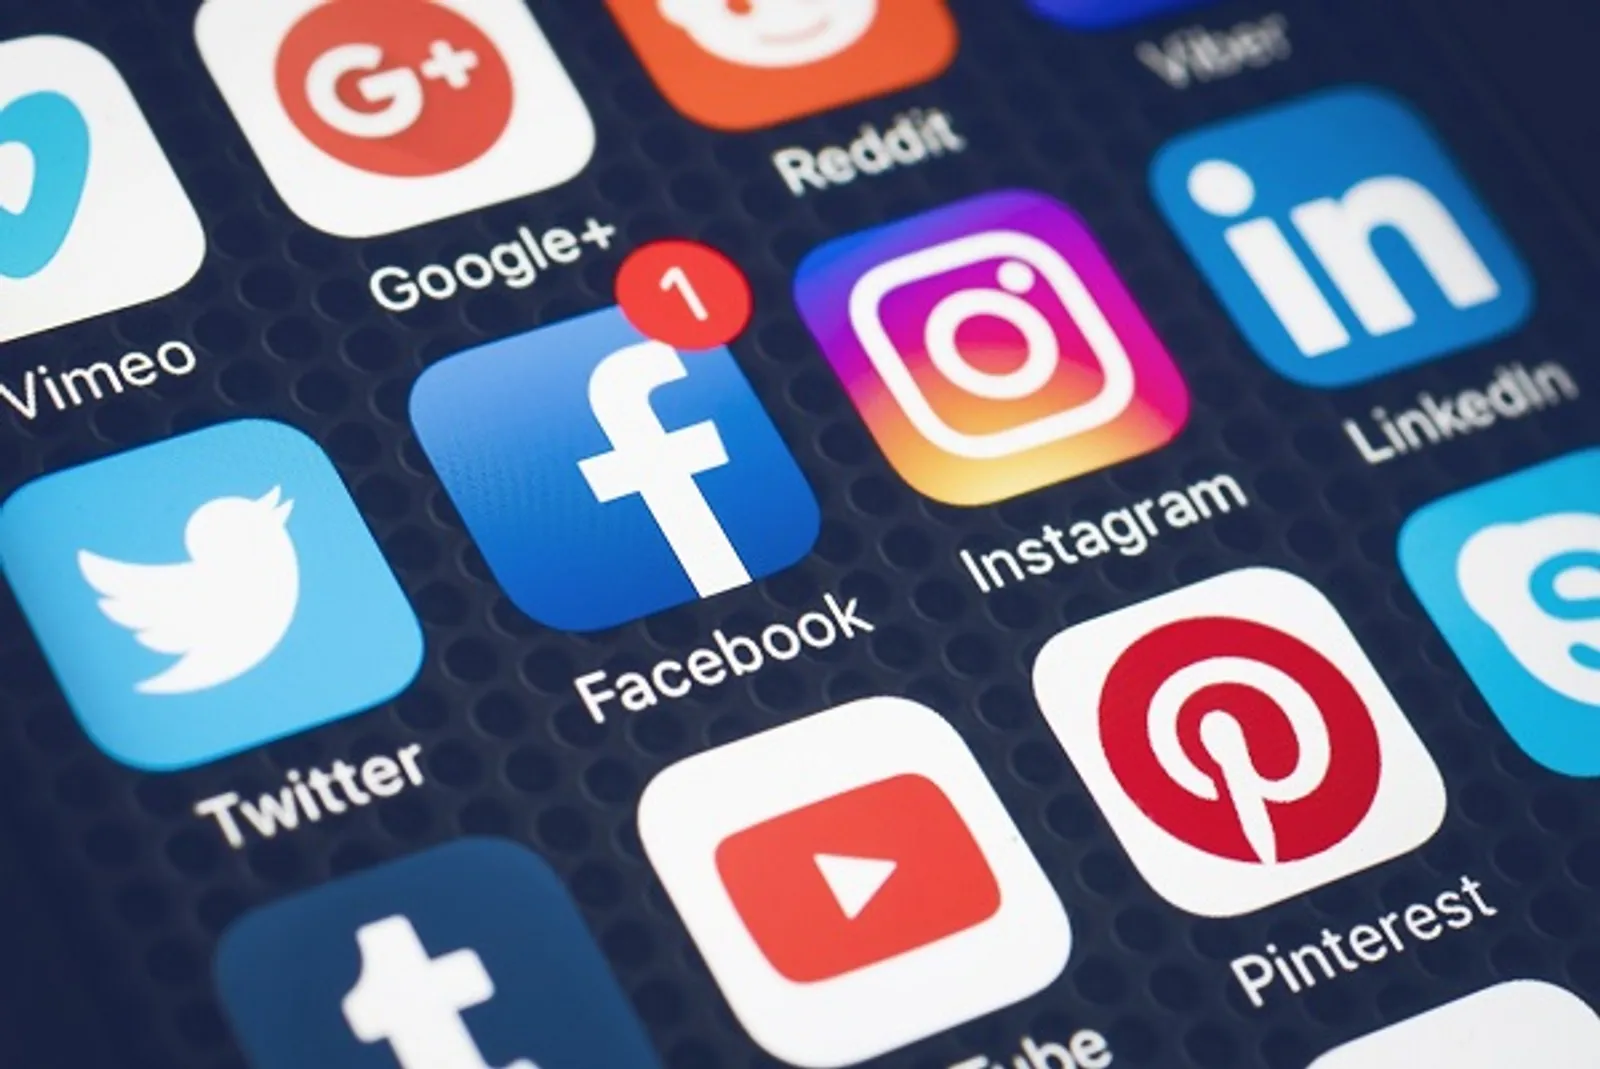 Daftar 10 Media Sosial yang Paling Diminati di Indonesia